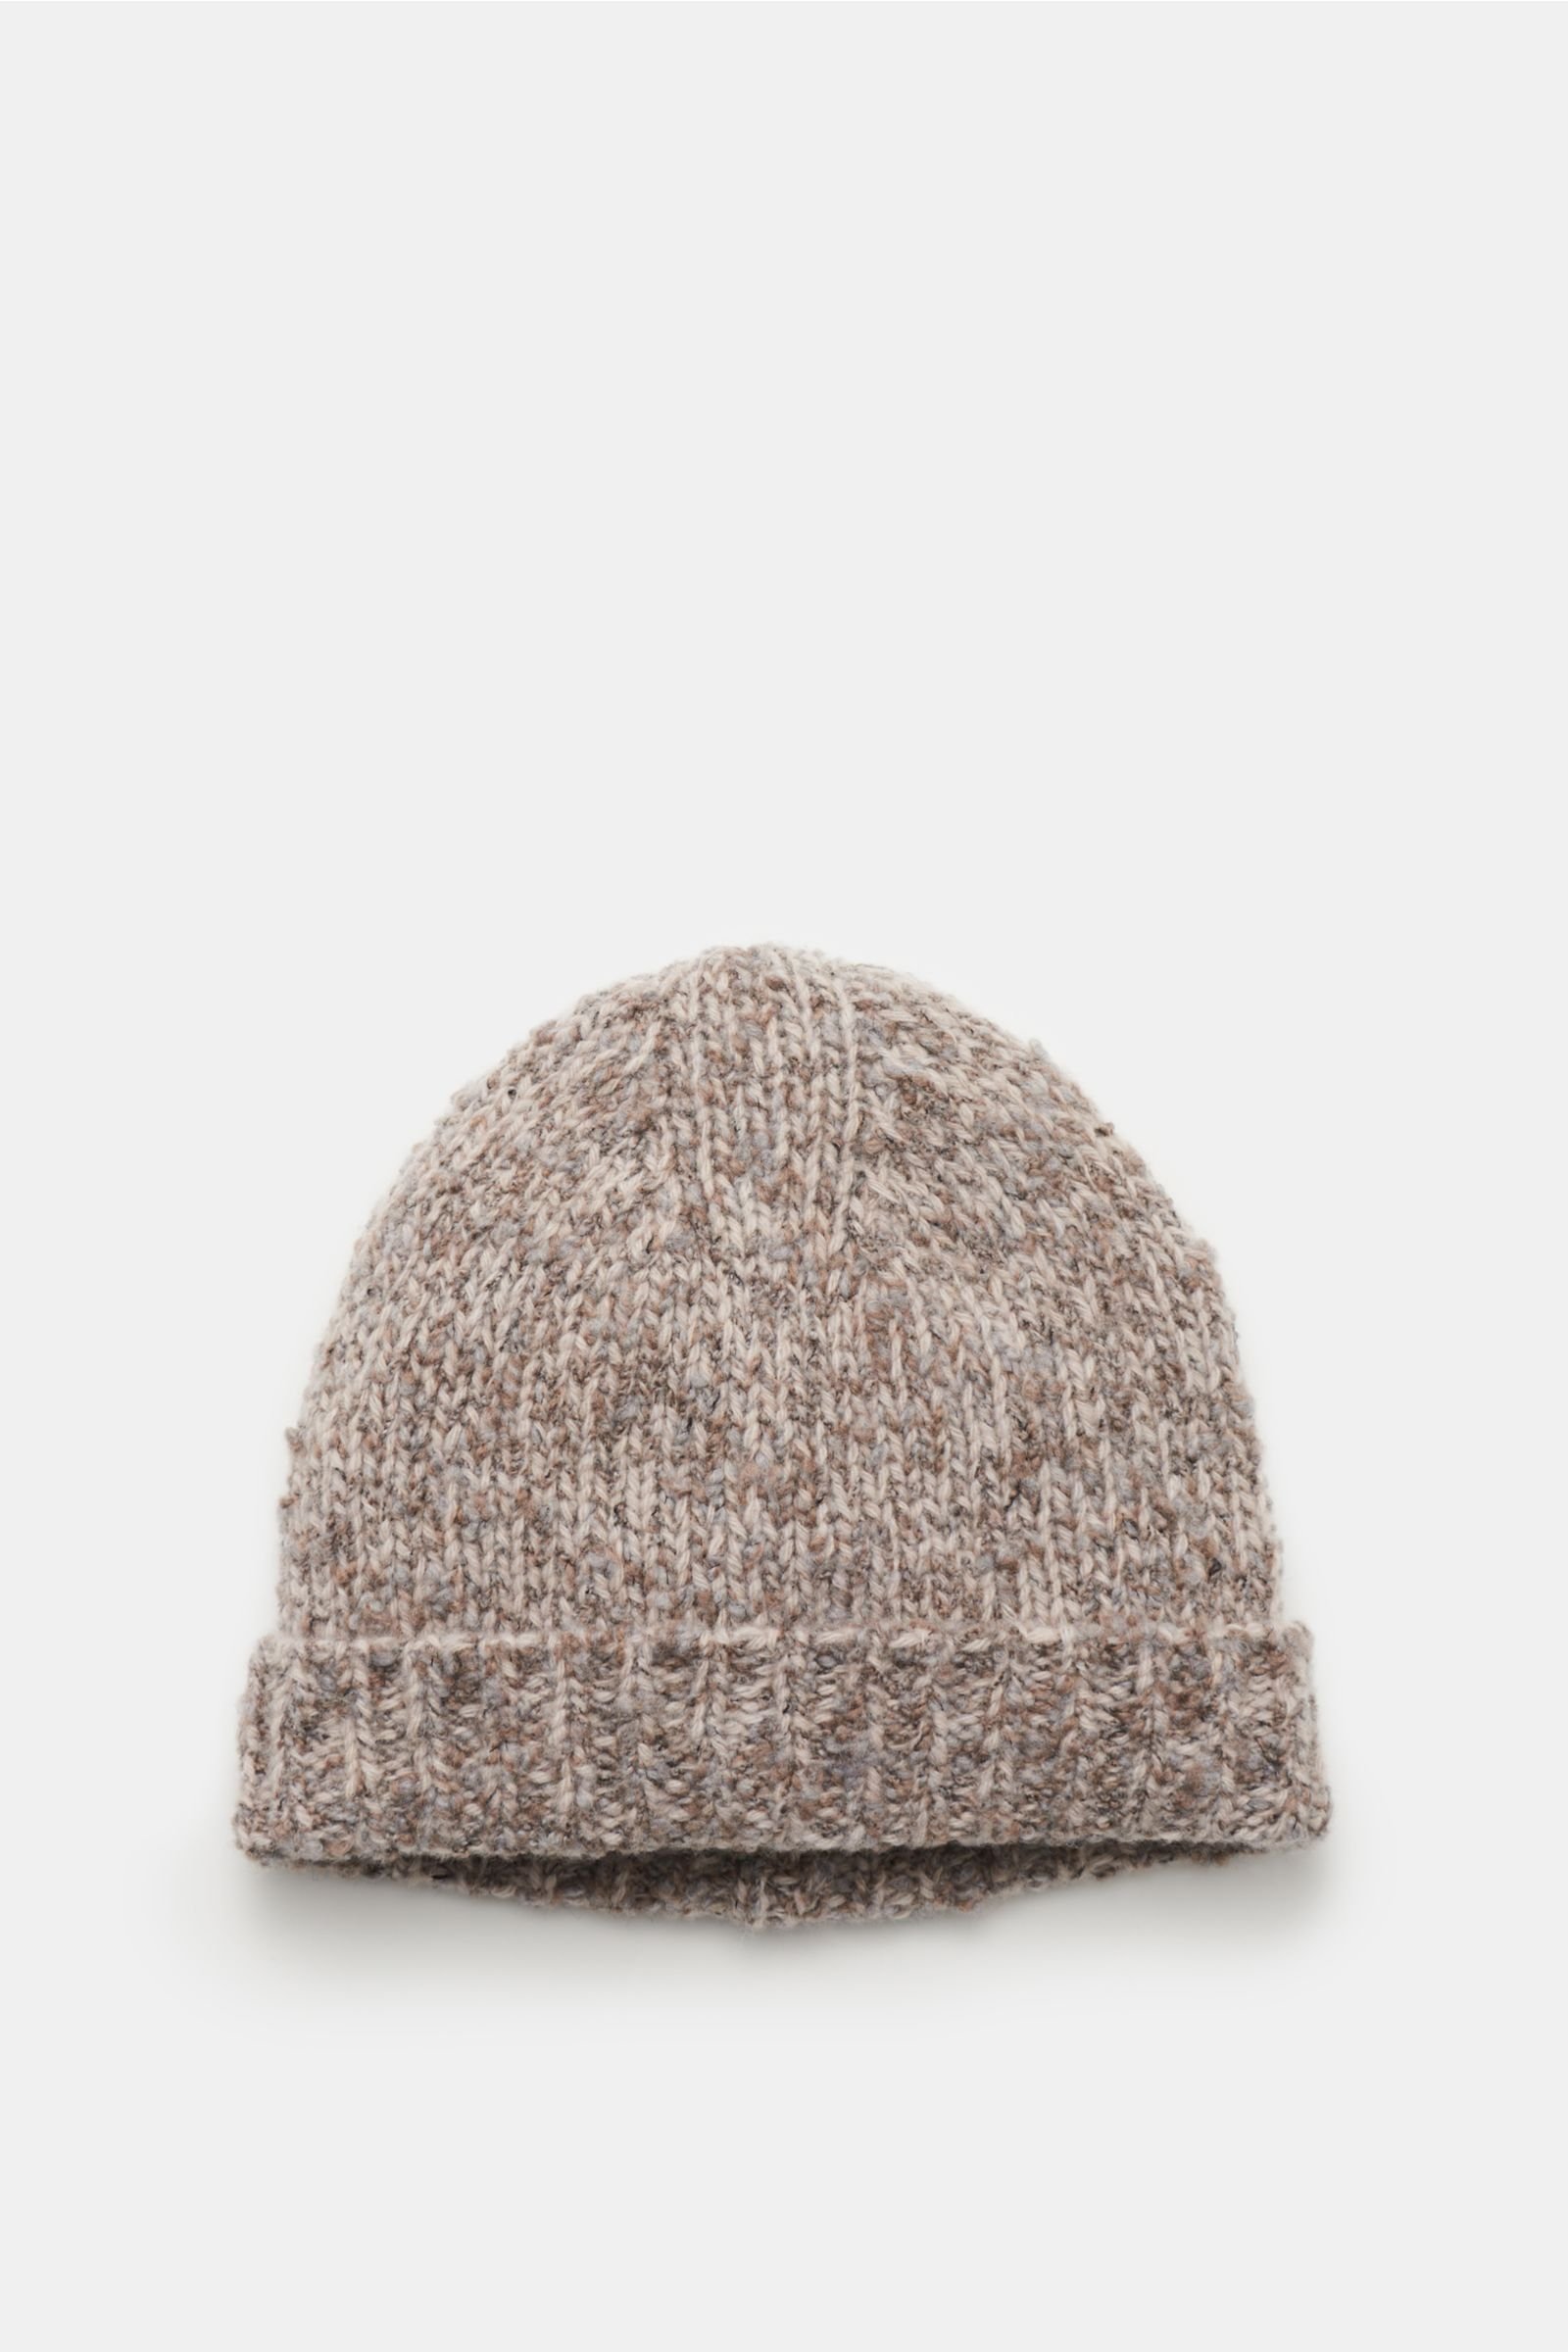 Wool beanie 'Handknit Hat' grey-brown/beige